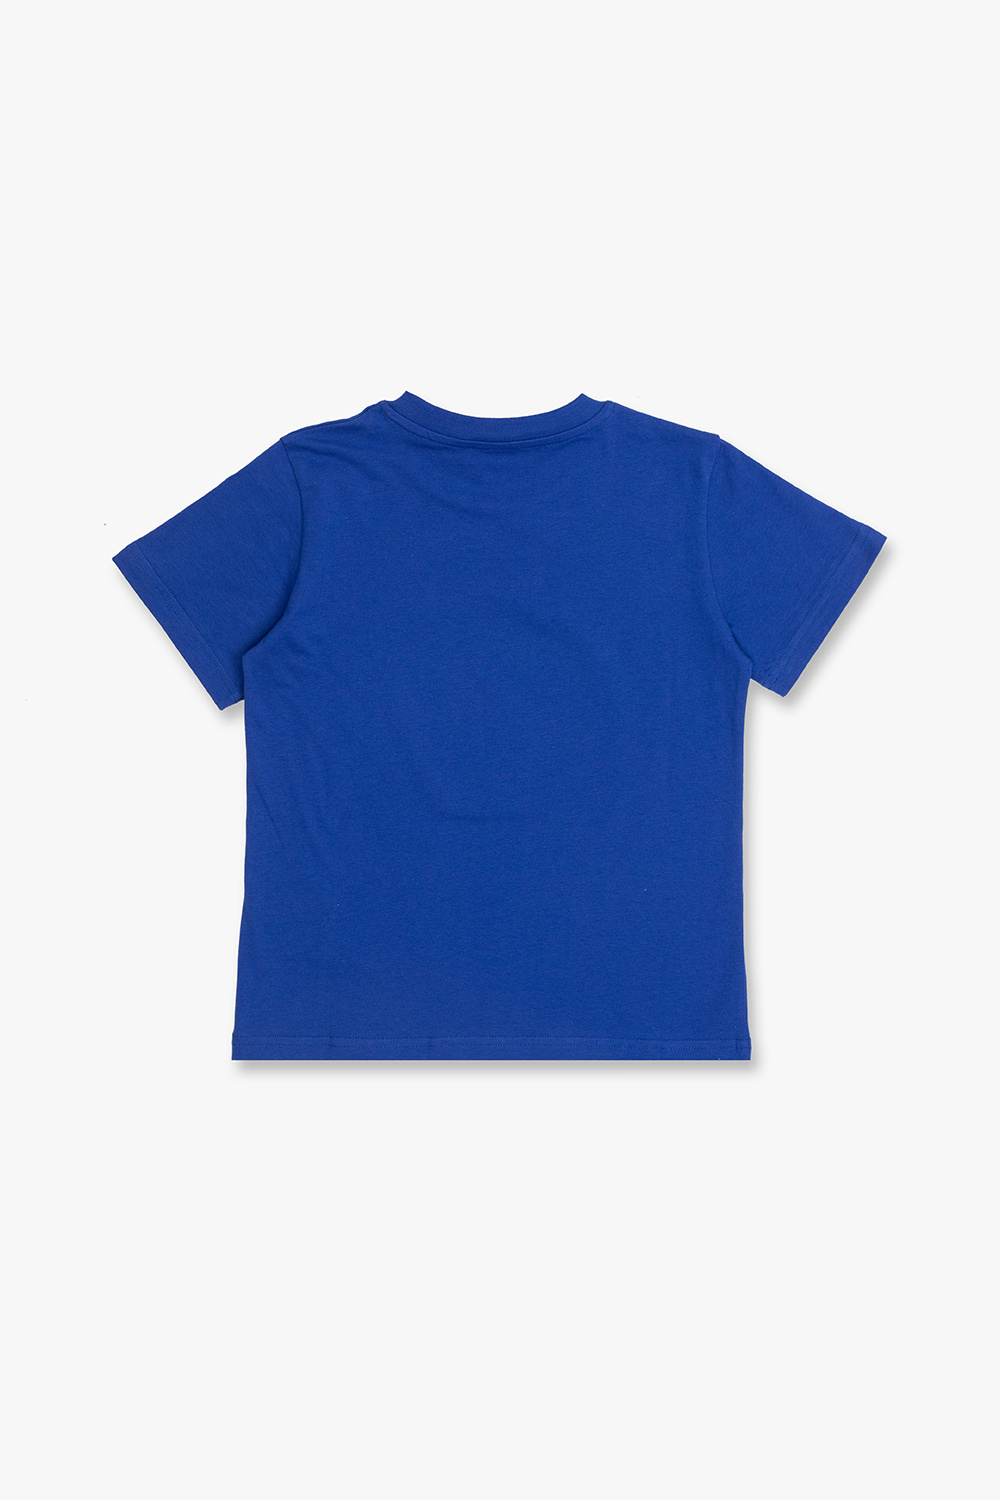 Moncler Enfant T-shirt with logo